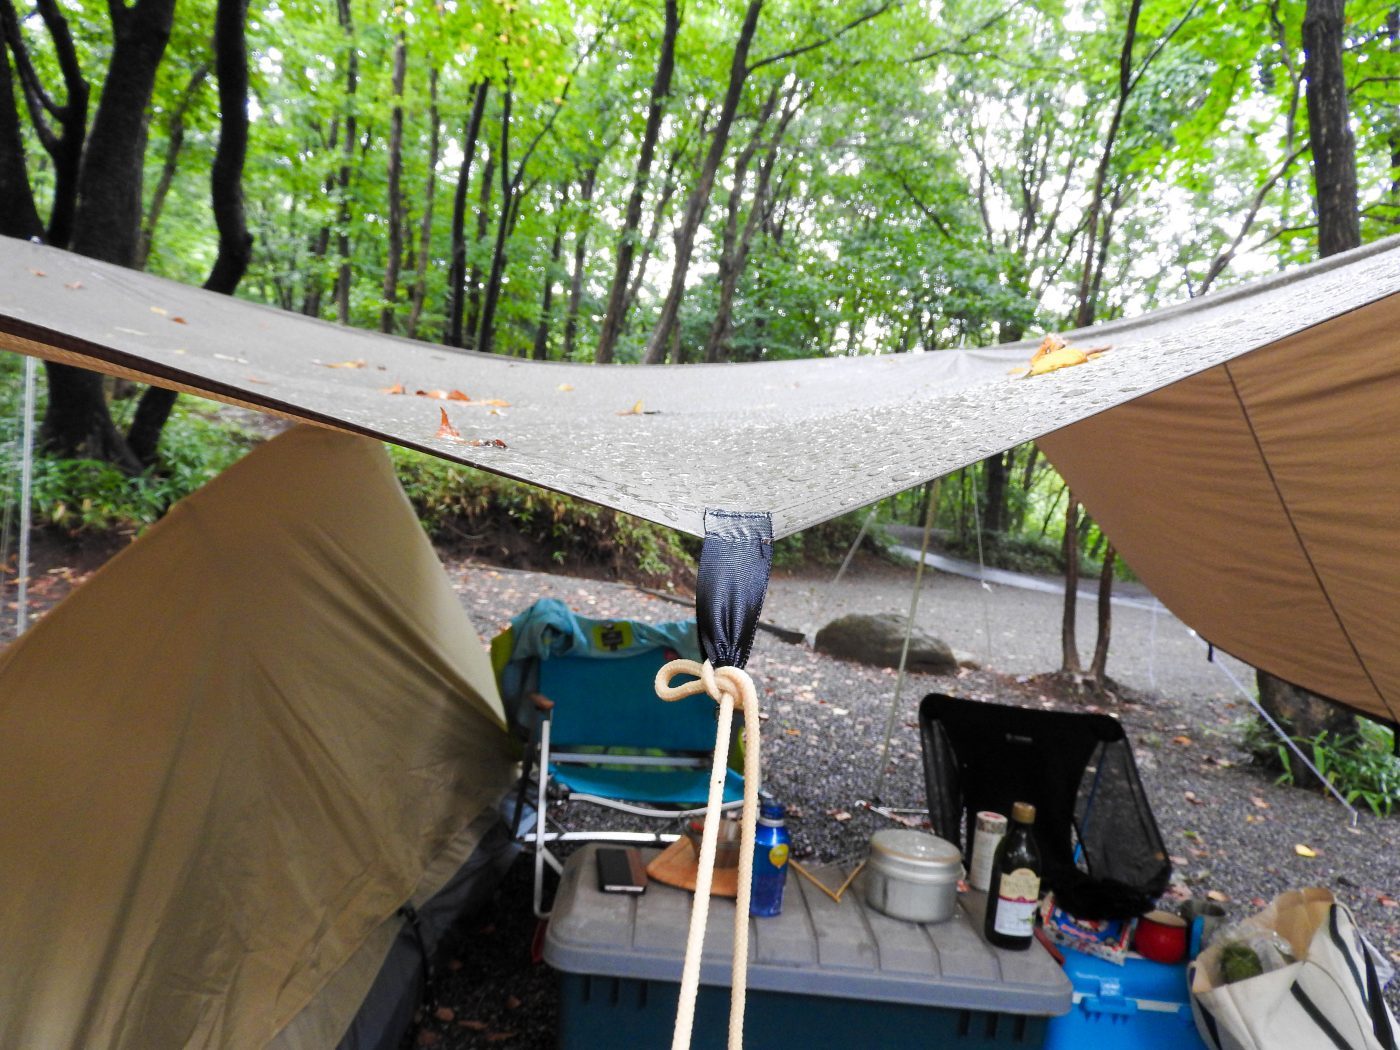 キャンプ初心者向け キャンプで突然の雨 慌てない様に事前に対策をしておきましょう キャンプ初心者向け総合情報ブログ Hyper Camp Creators